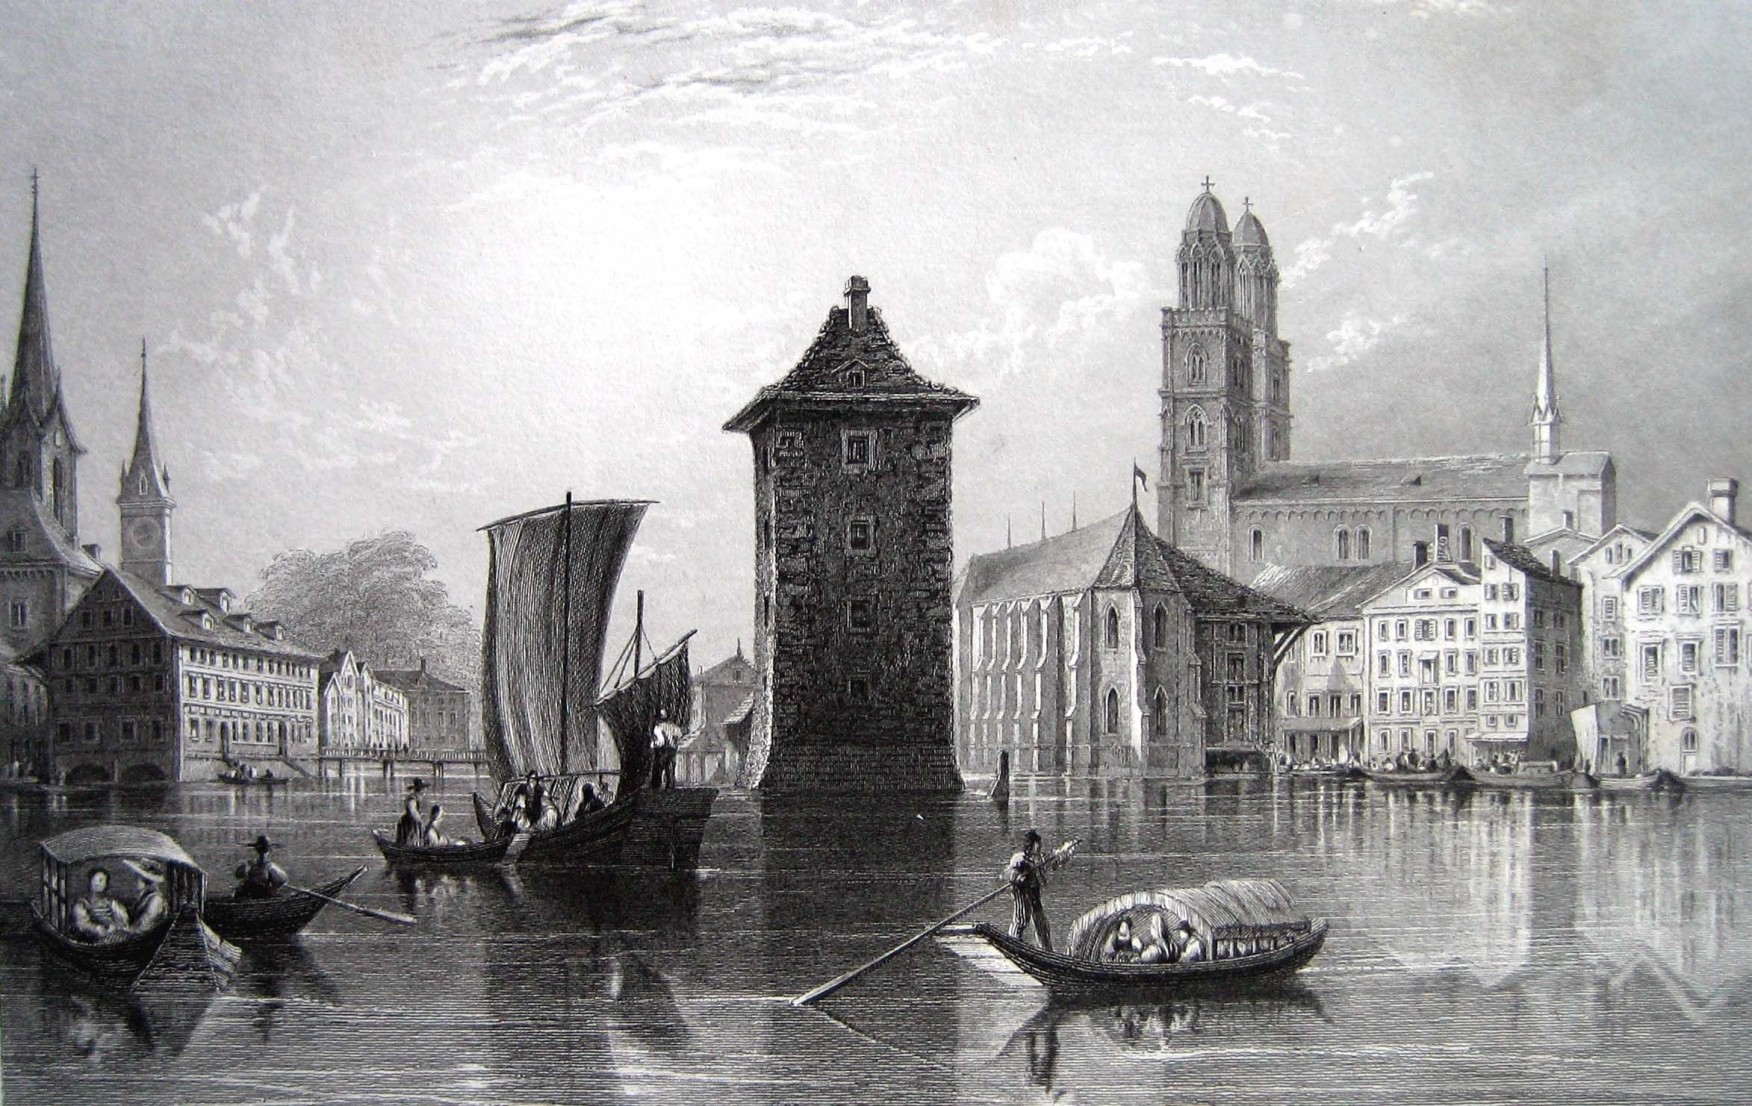 Im Wellenturm in der Limmat neben der Wasserkirche wurden die Angeklagten verhört und gefoltert. Der Turm wurde 1837 abgebrochen. Stich von H. W. Bartlett.